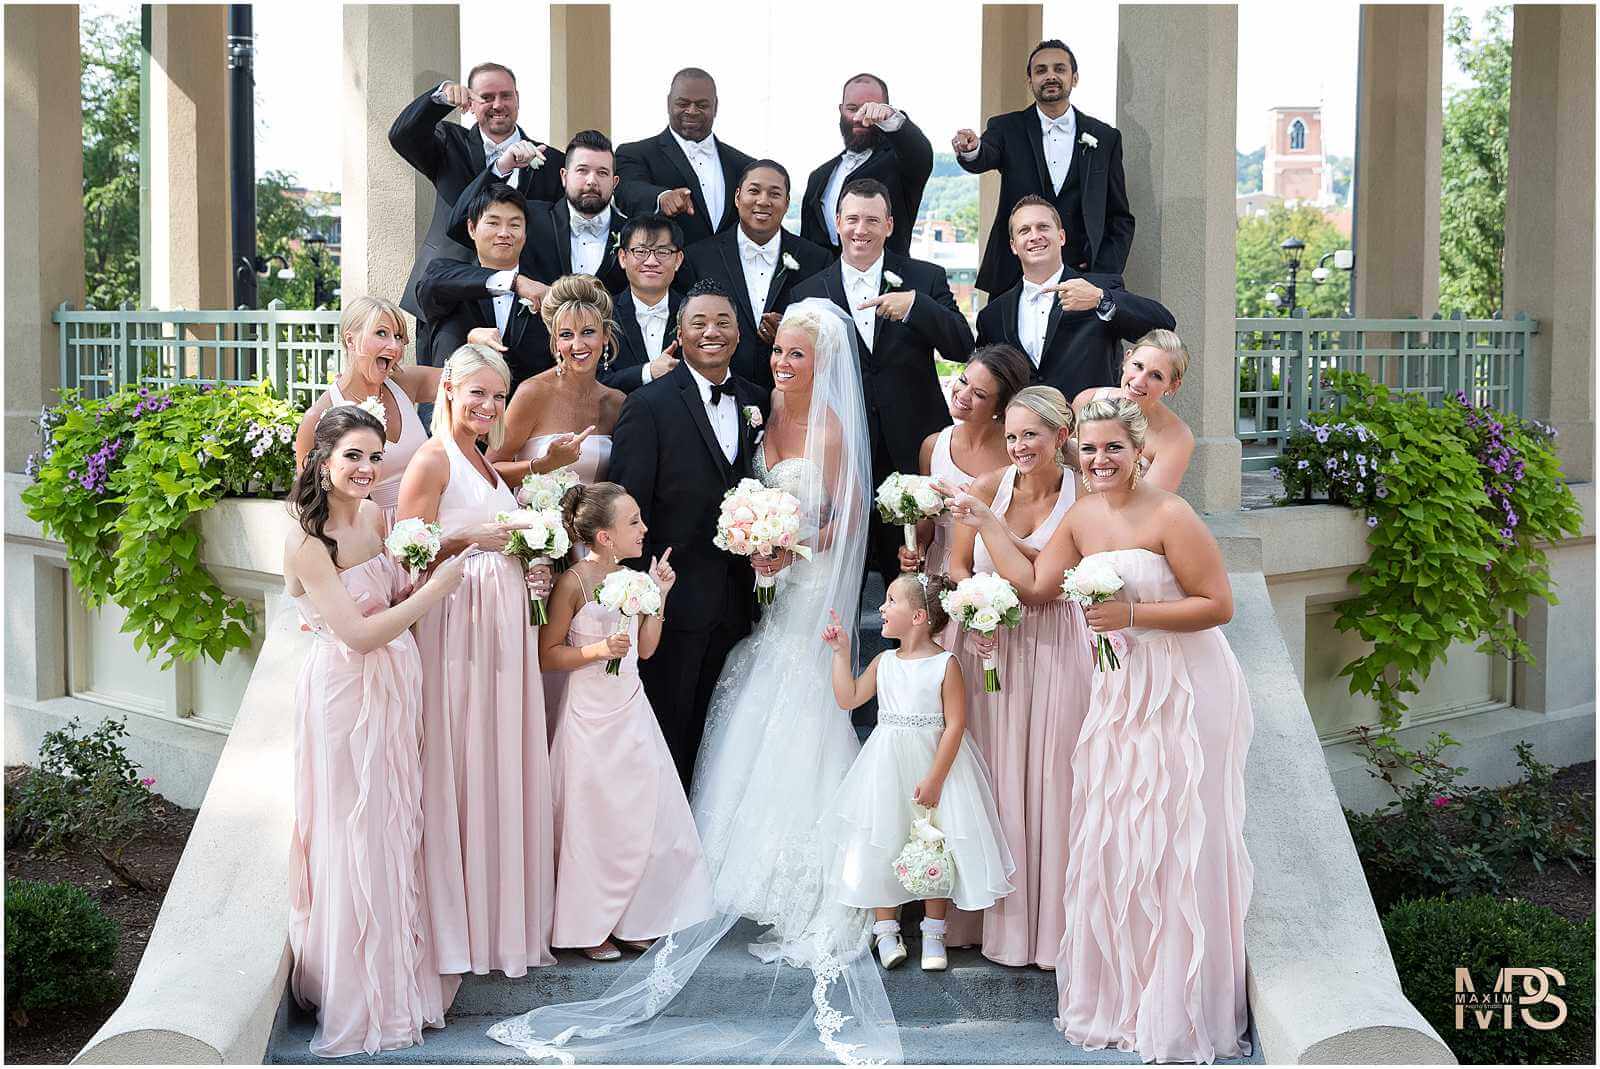 Cincinnati Music Hall wedding groom bride portraits